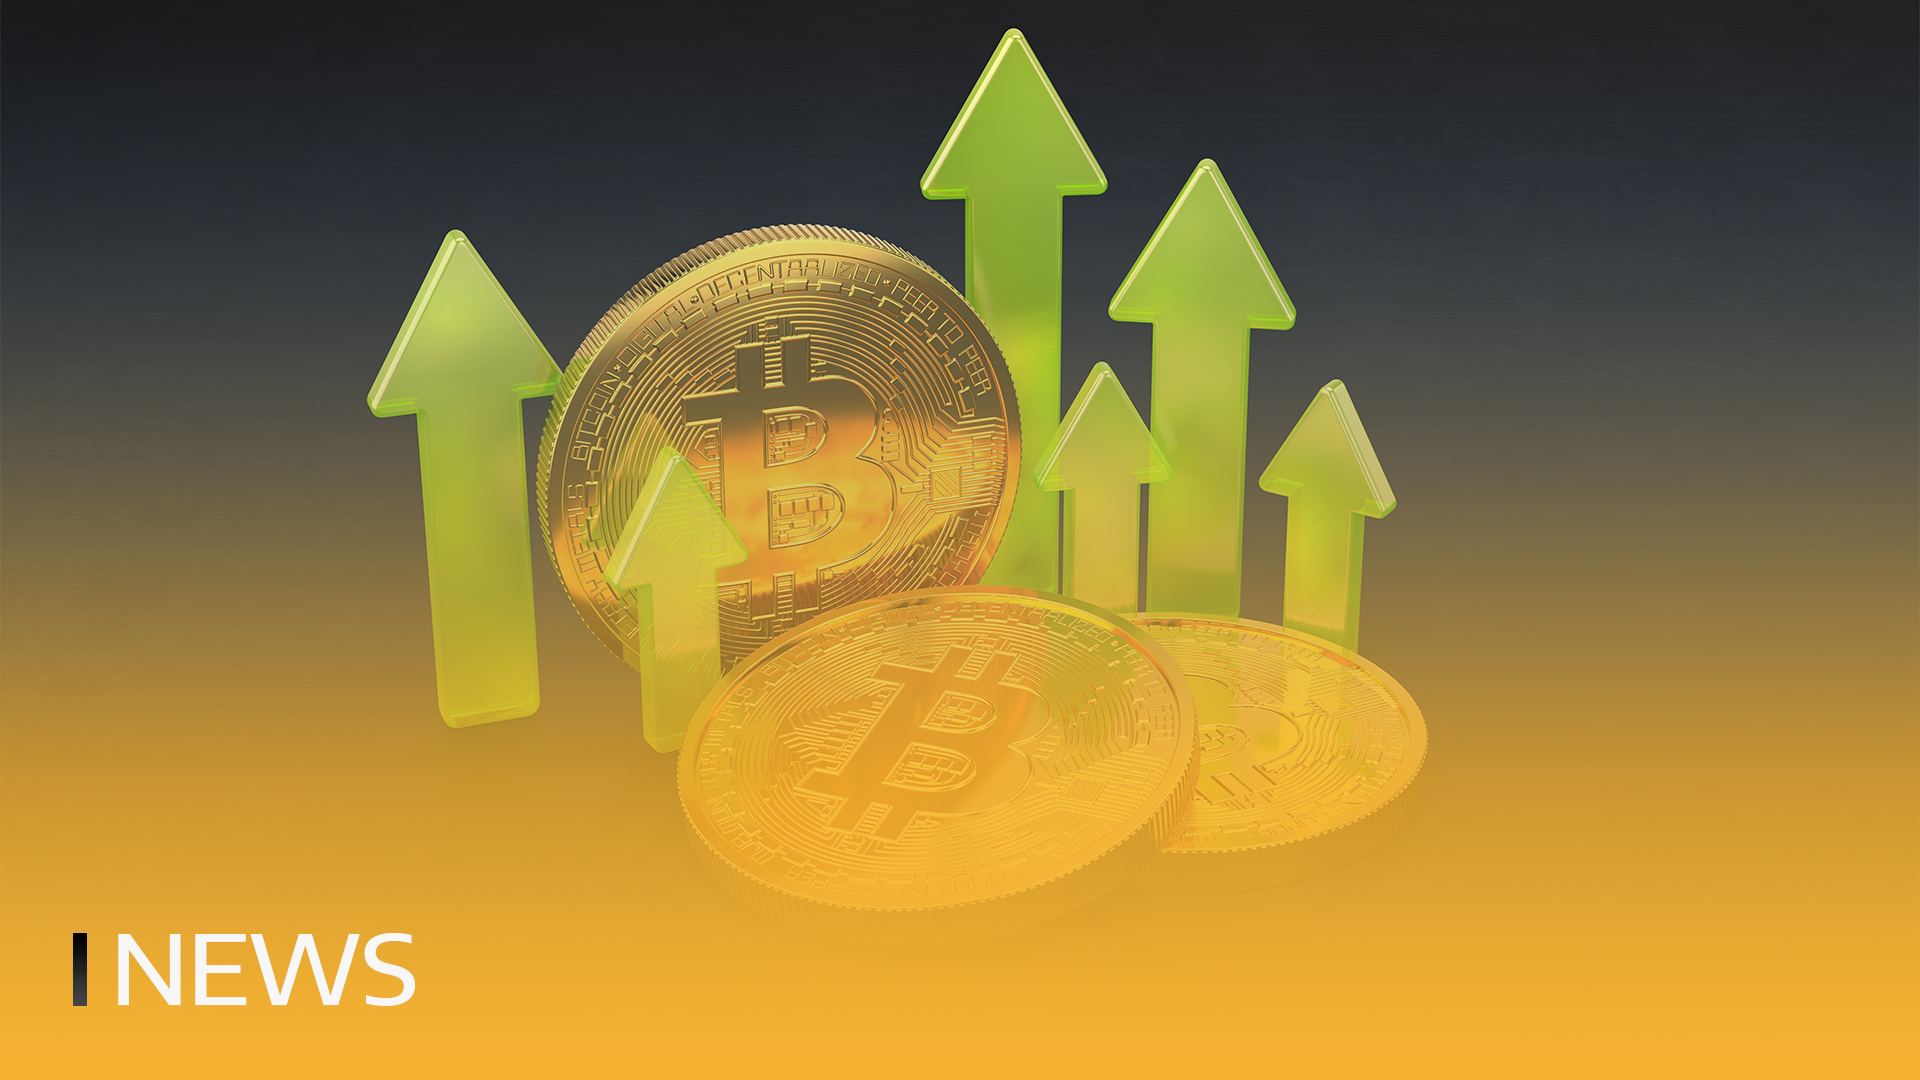 El análisis sugiere que ahora es el mejor momento para comprar Bitcoin